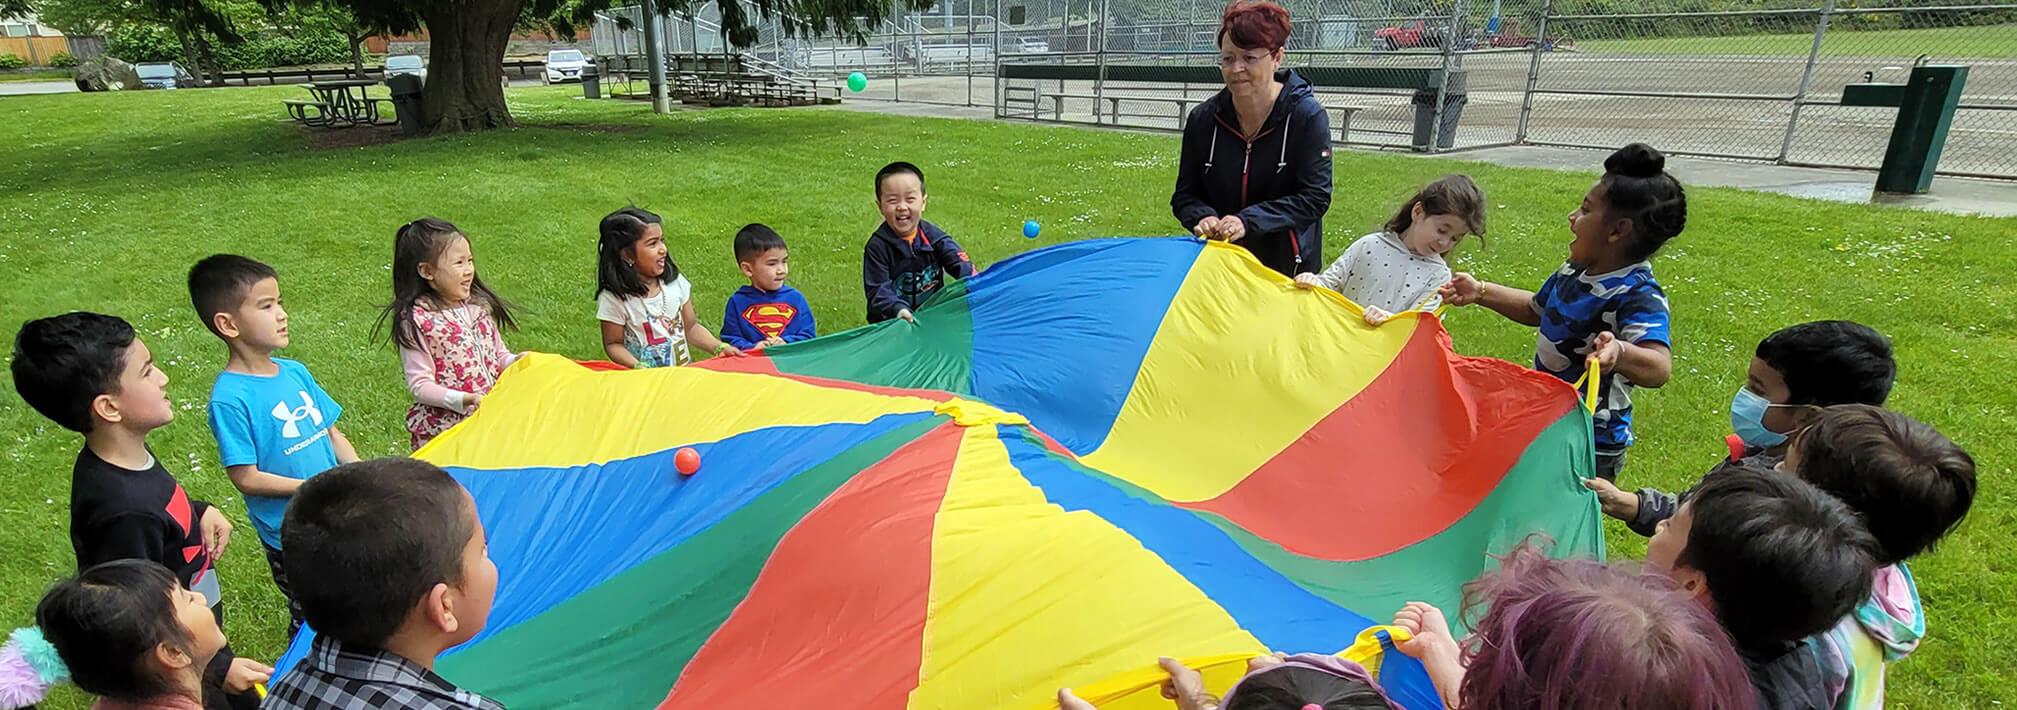 Preschool field day - Parachute - King of Kings Preschool - Renton, WA